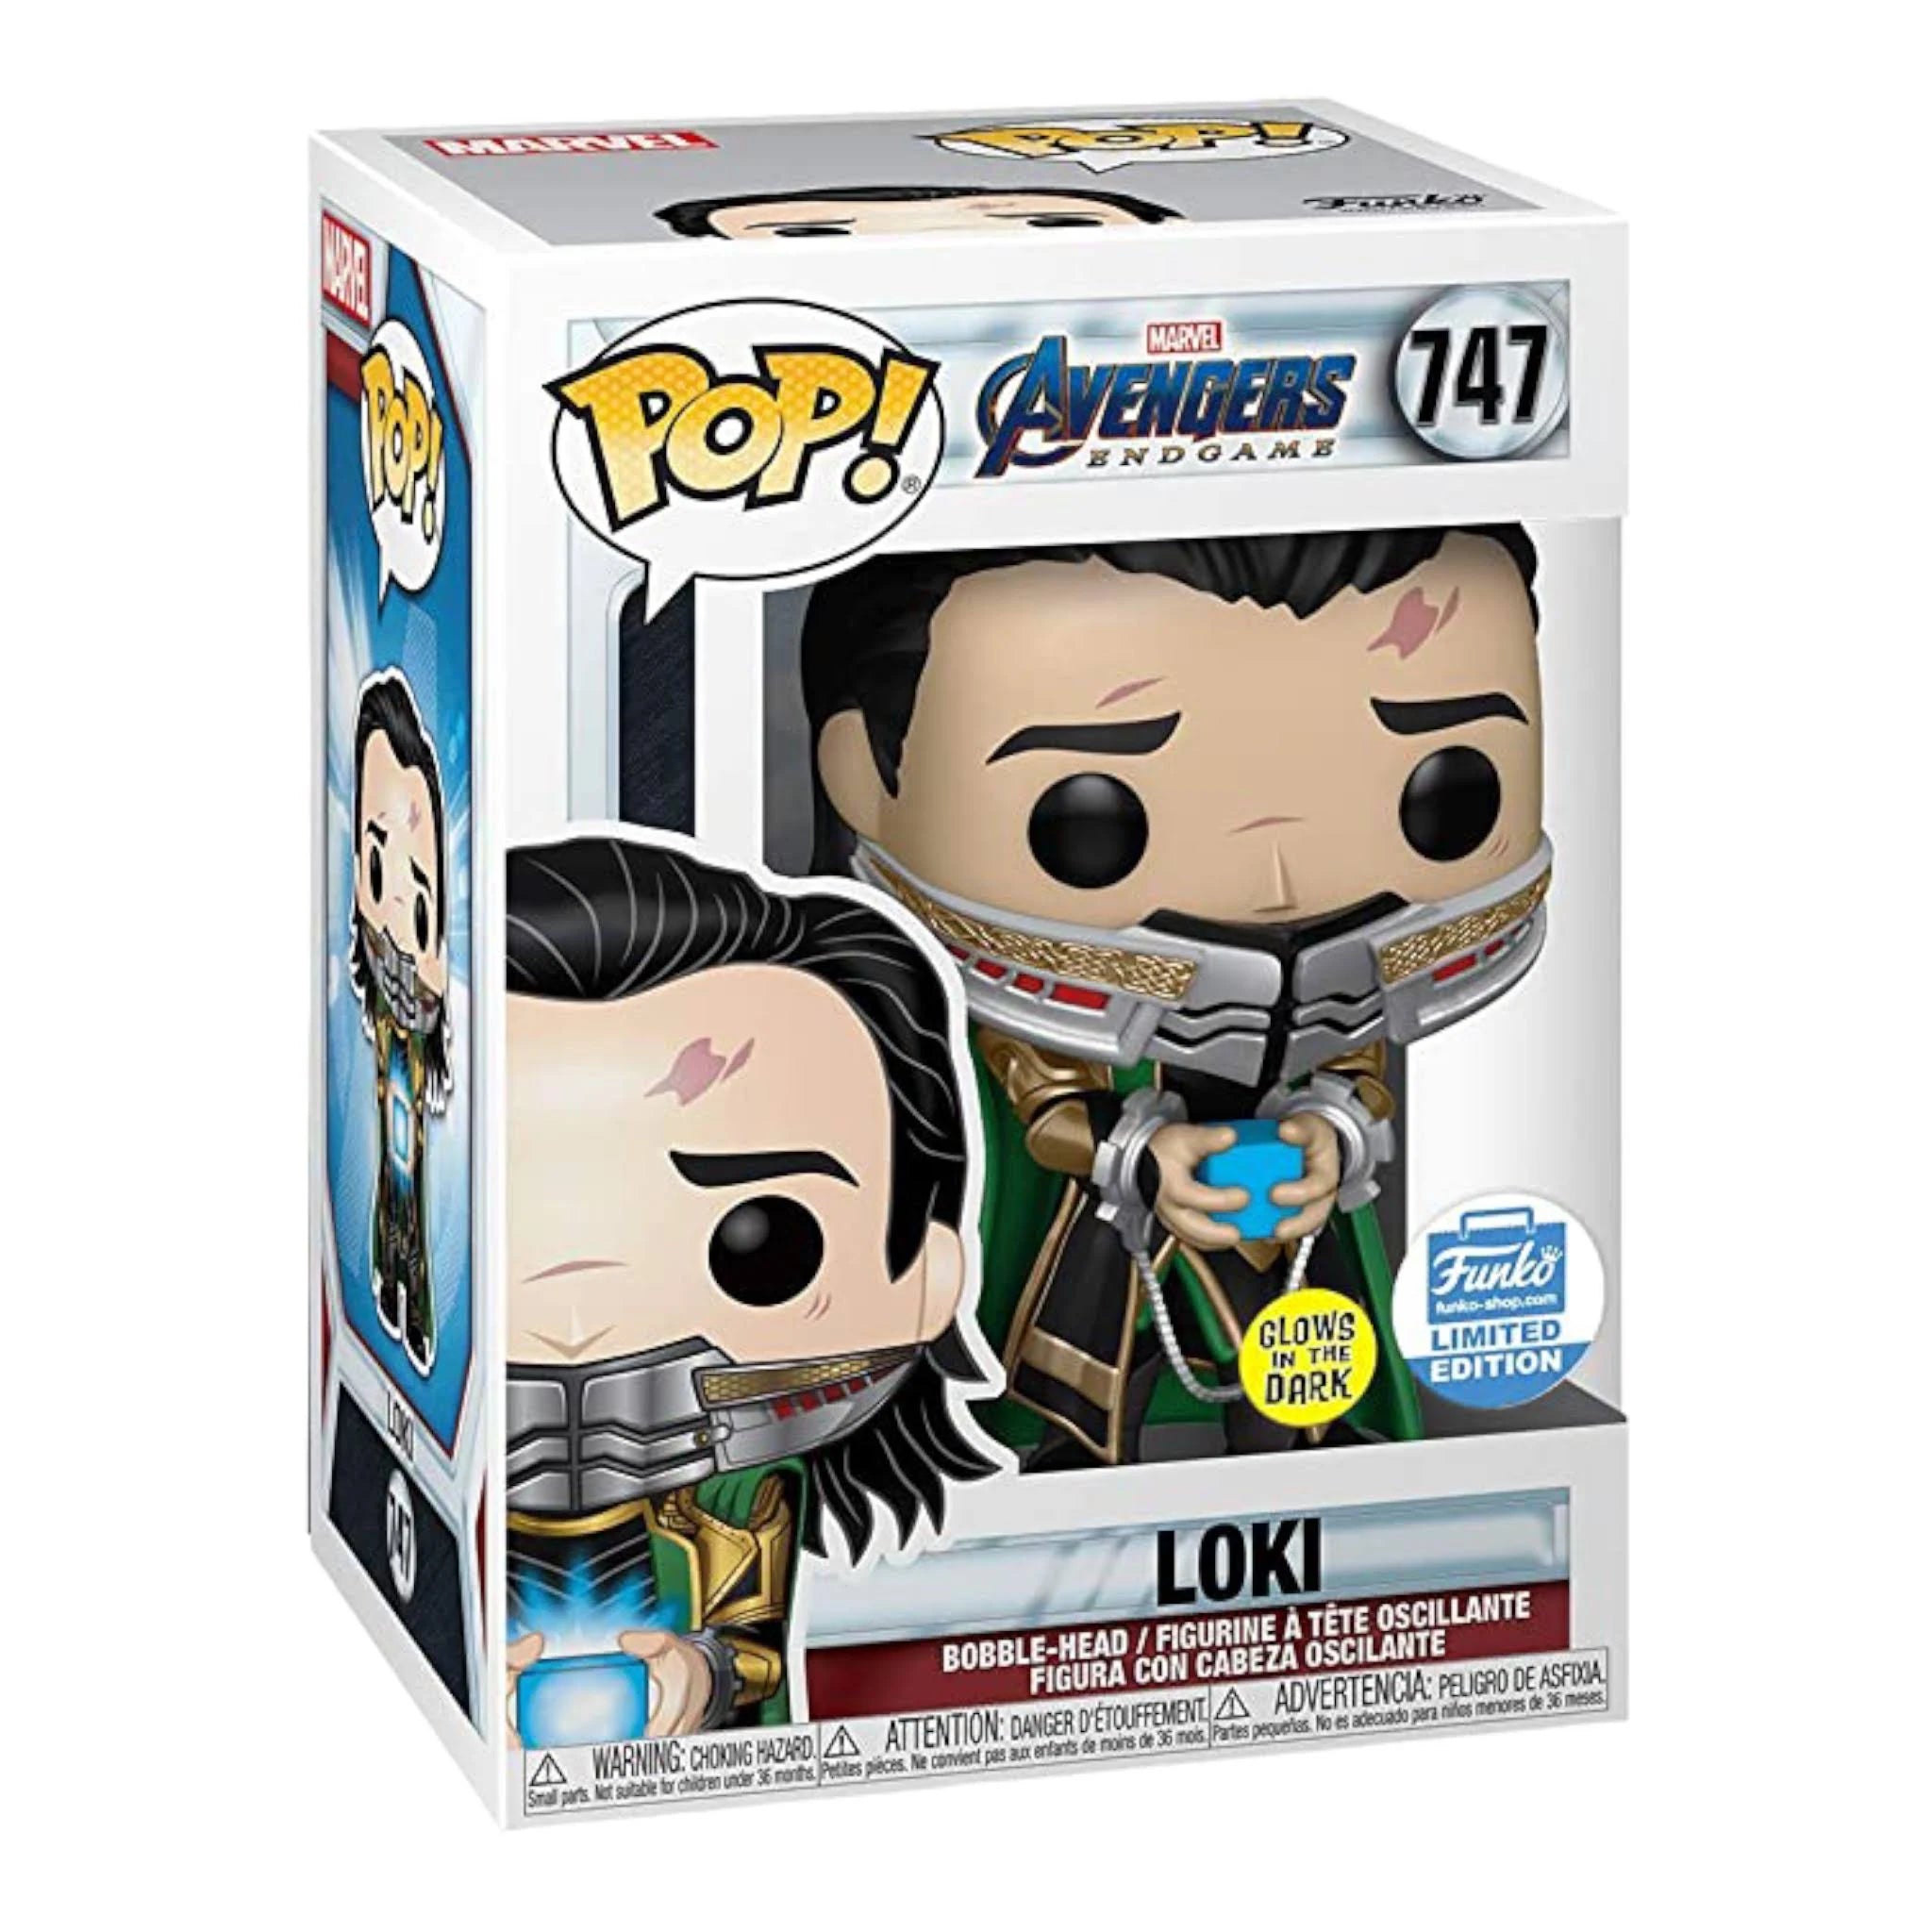 Loki Funko Pop! #747 Marvel Avengers Endgame Funko Exclusive